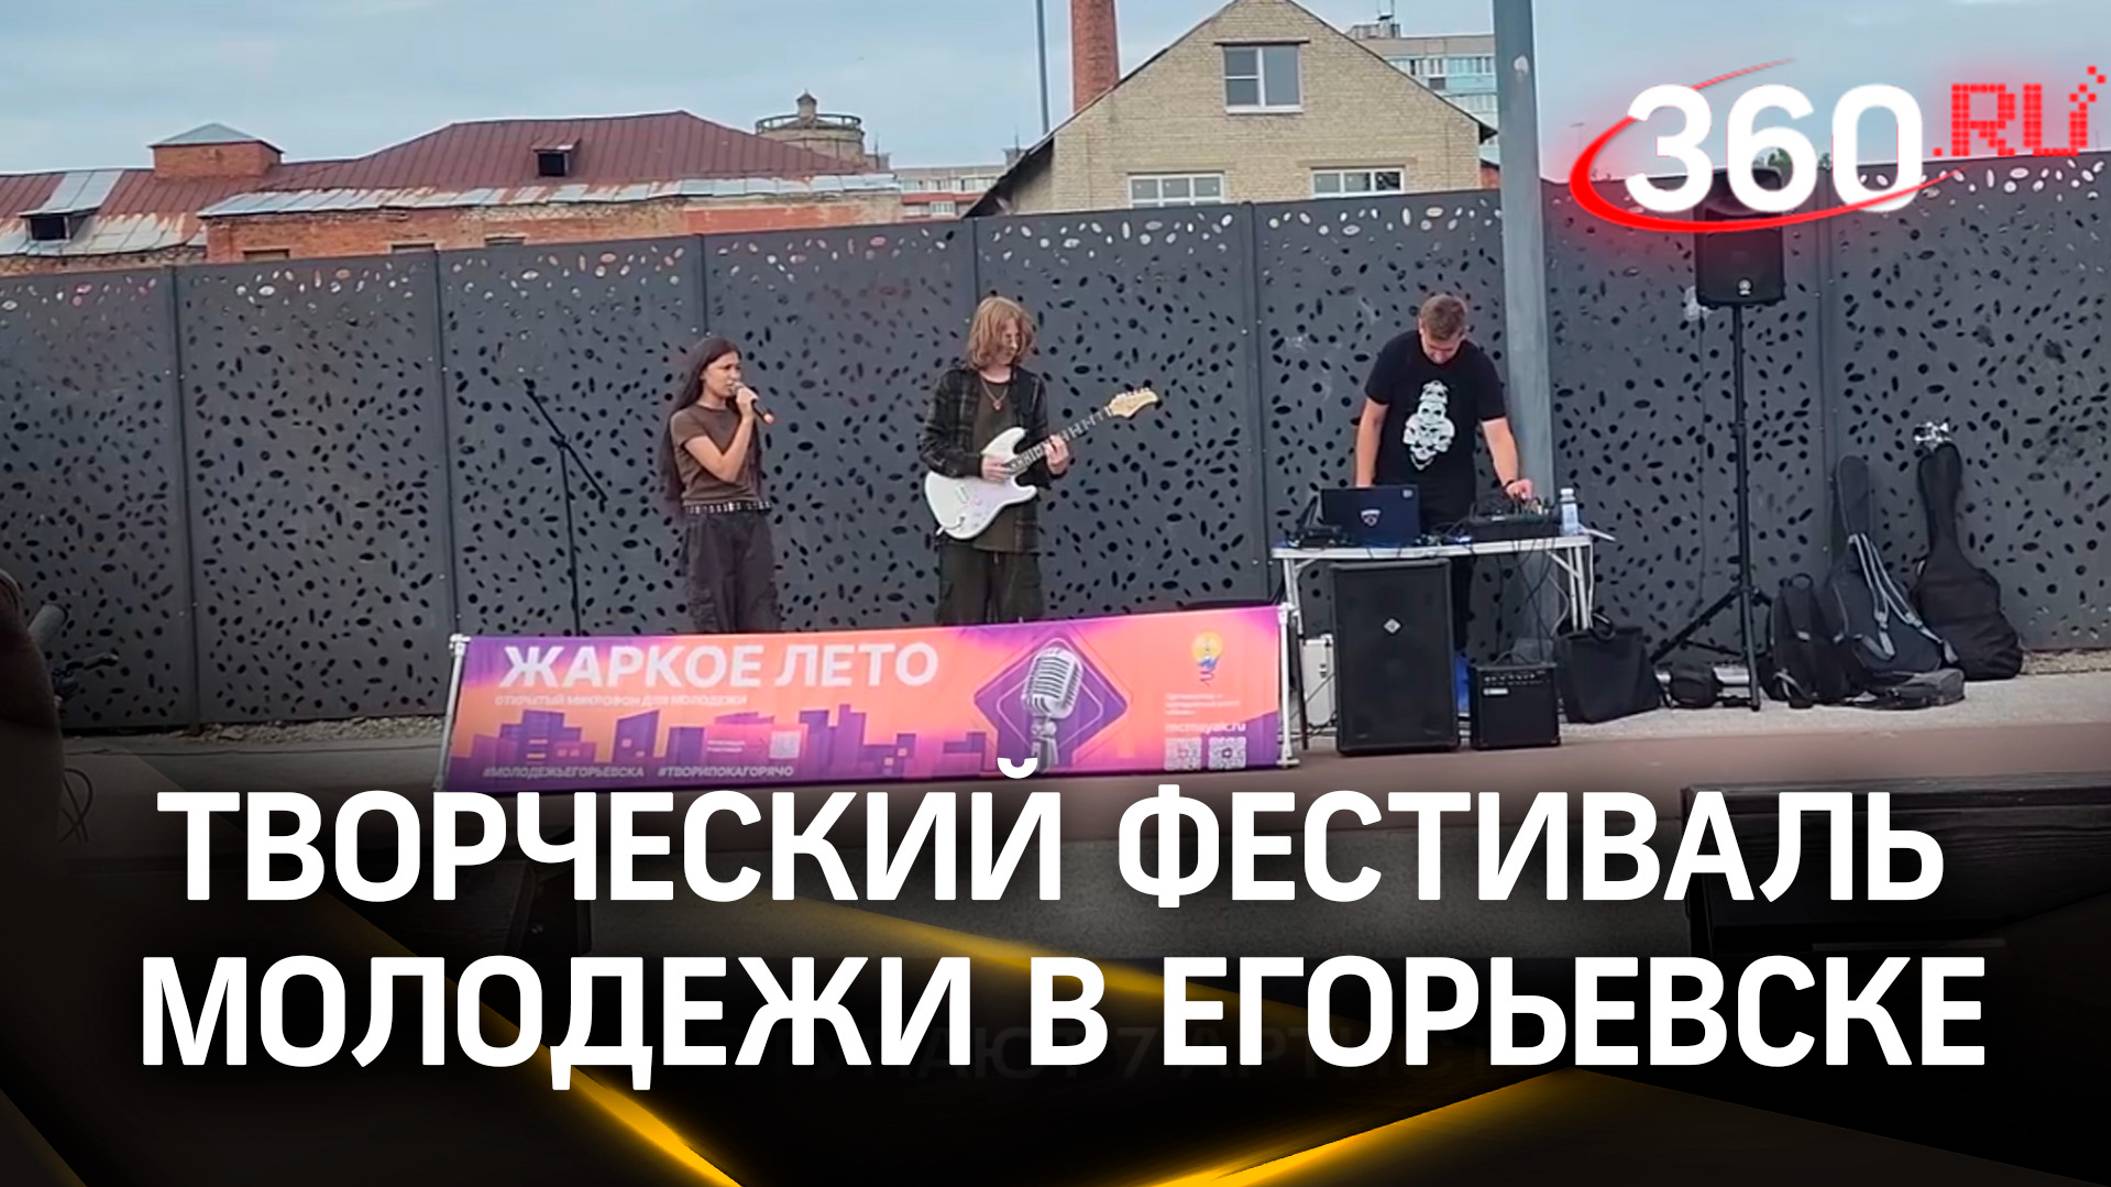 Регулярный творческий фестиваль молодёжи проходит в Егорьевске